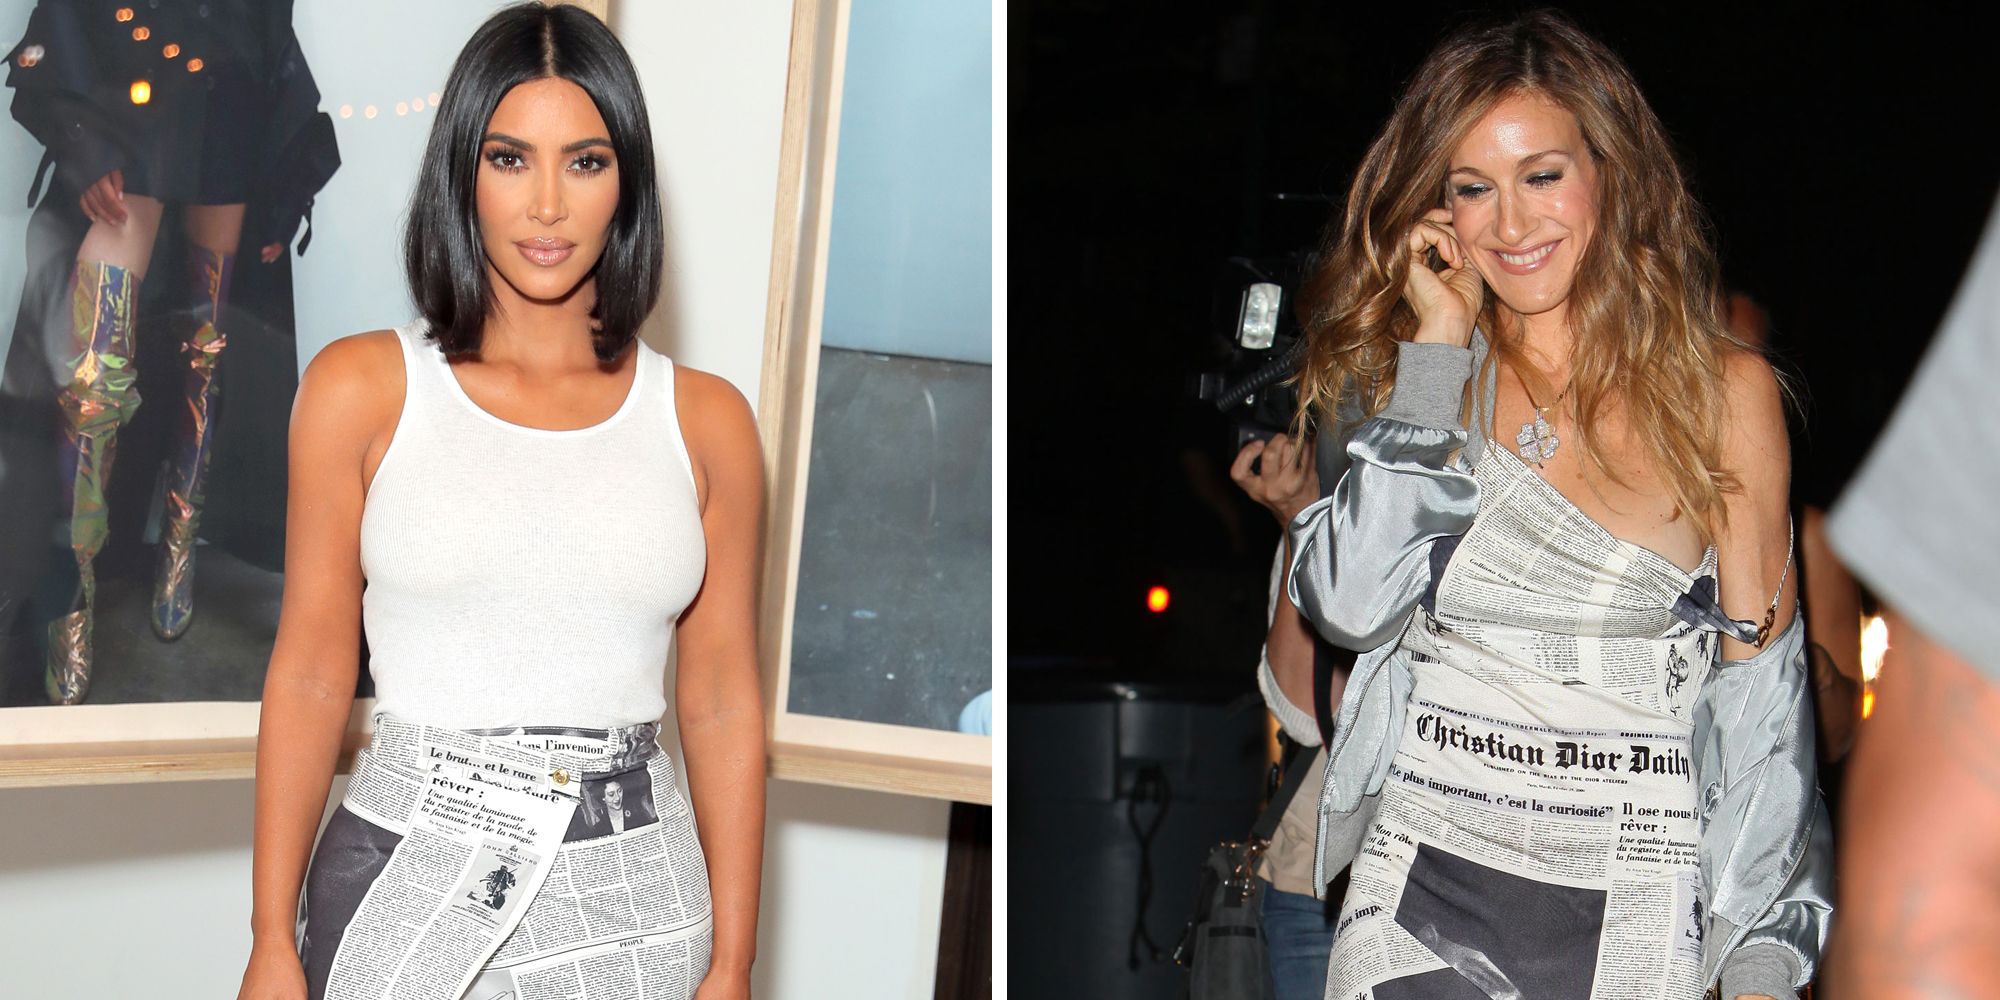 Kim Kardashian Carried a $35,000 Dior Handbag to Run Errands